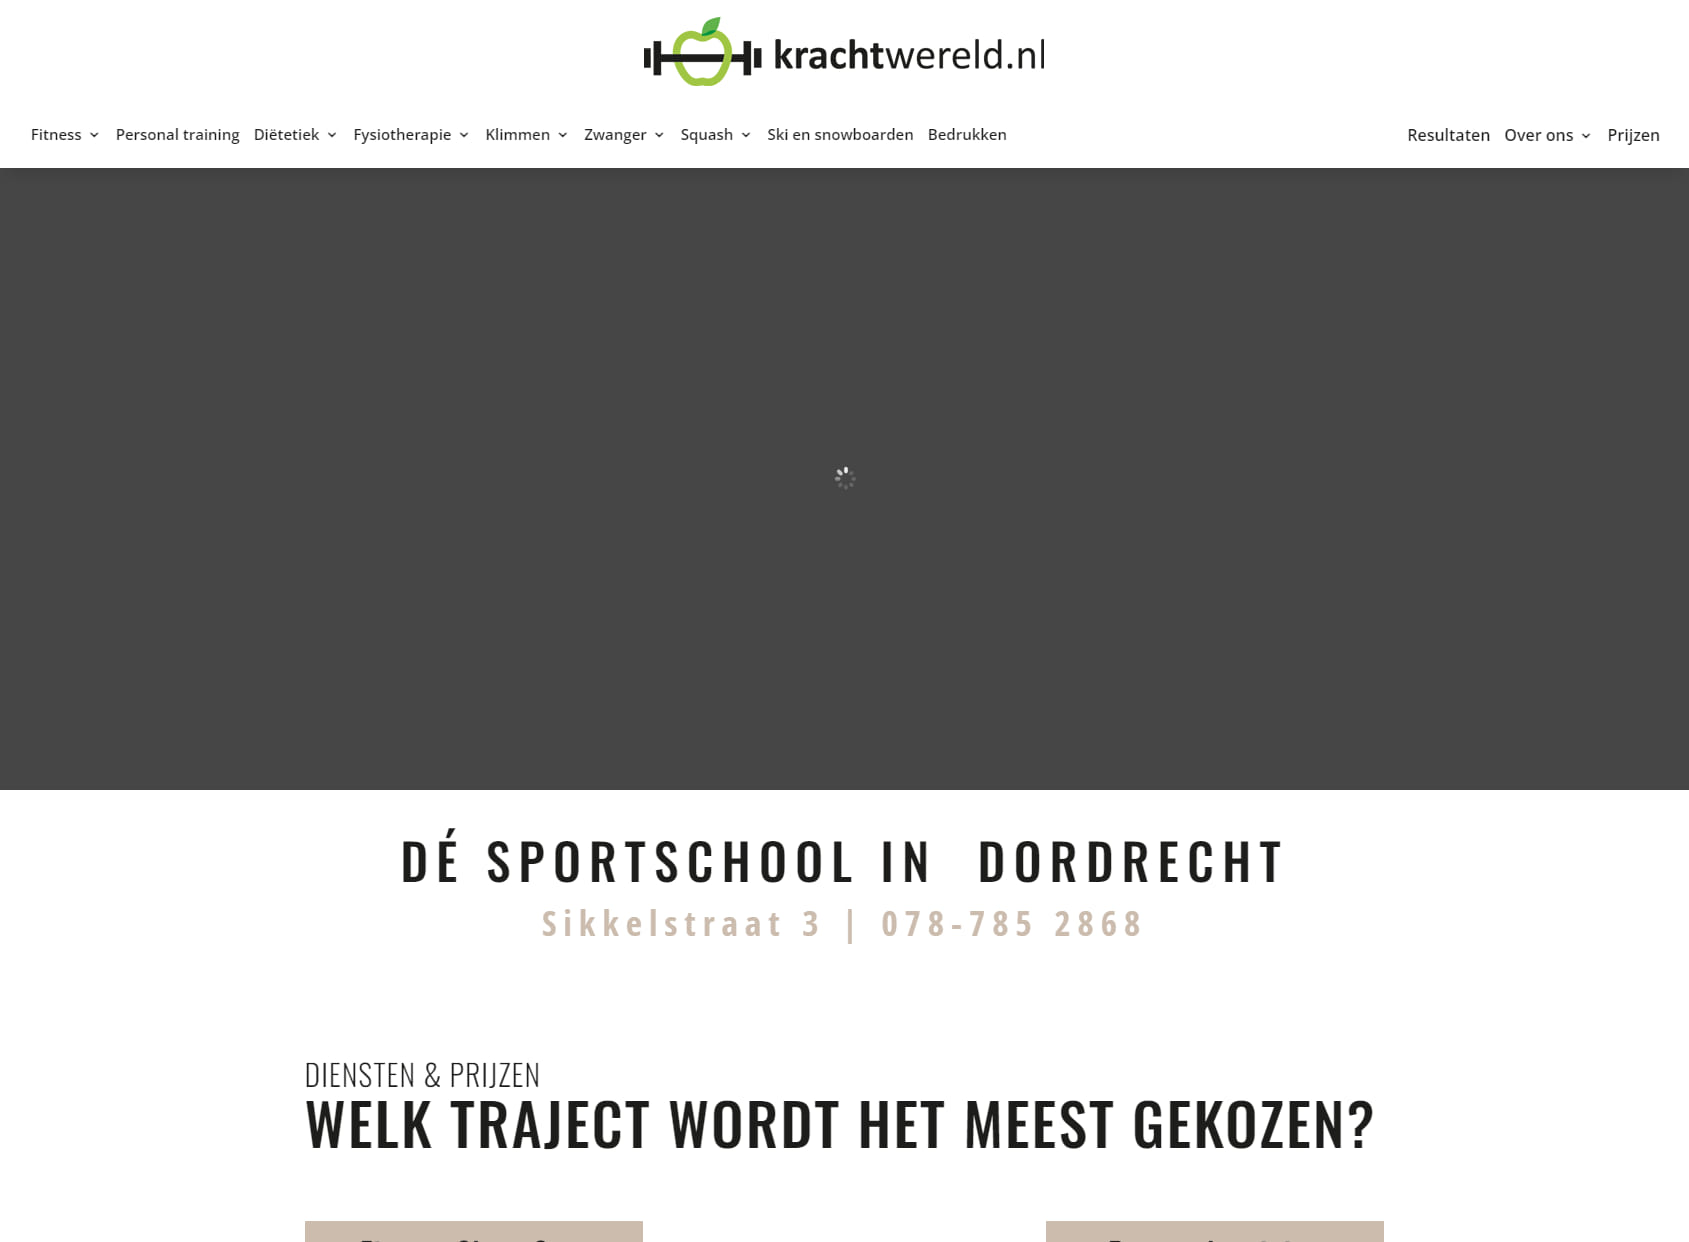 krachtwereld.nl - Sporten met 100% resultaat!